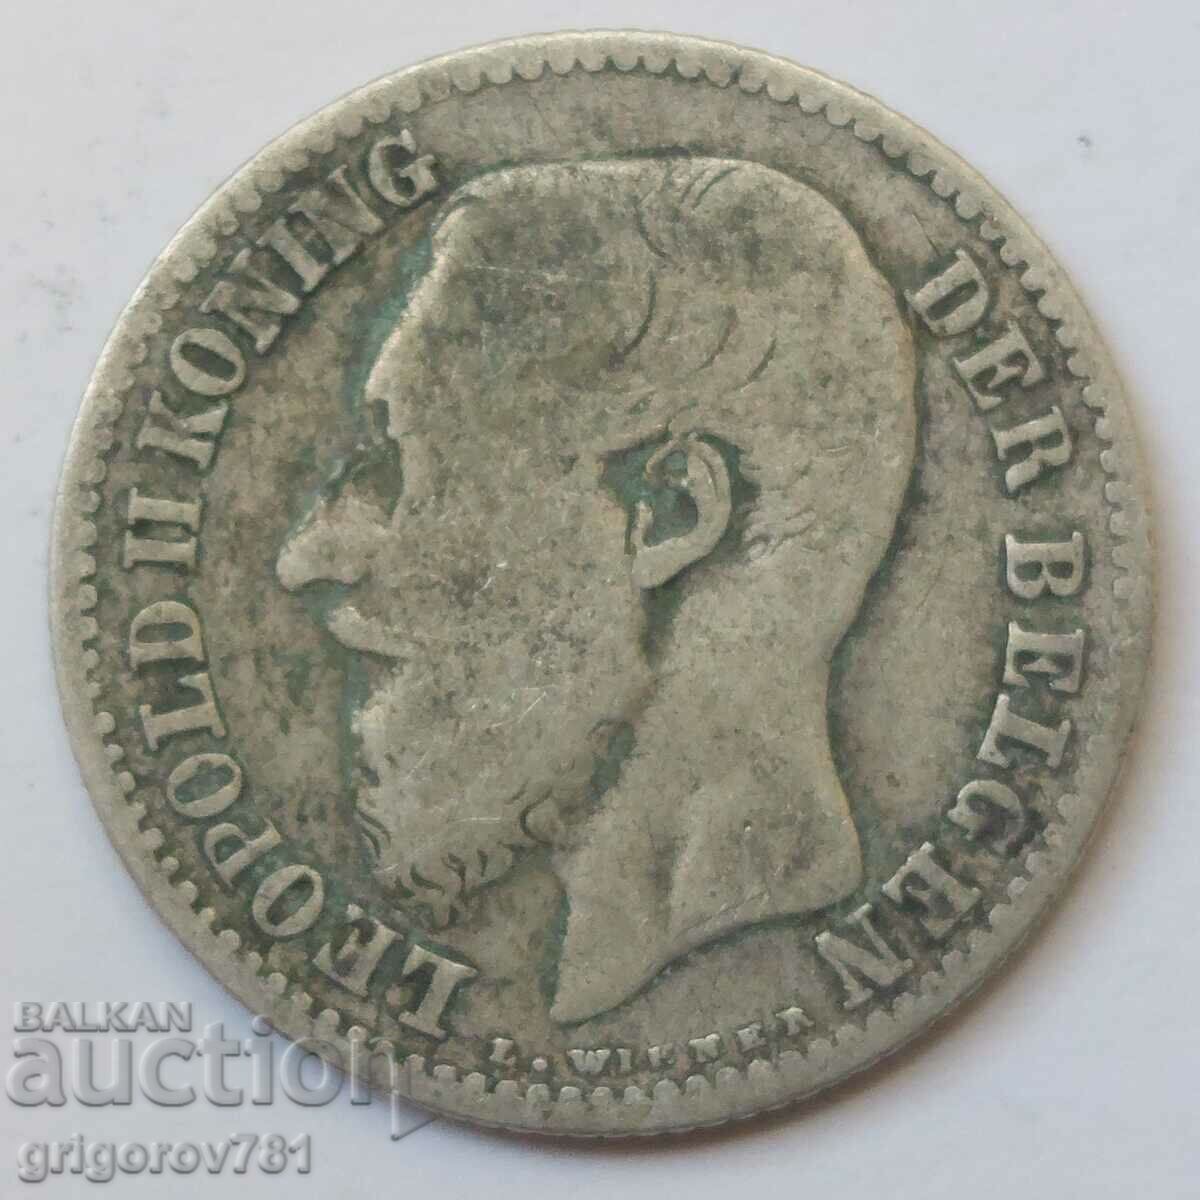 1 franc silver Belgium 1887 - silver coin #58